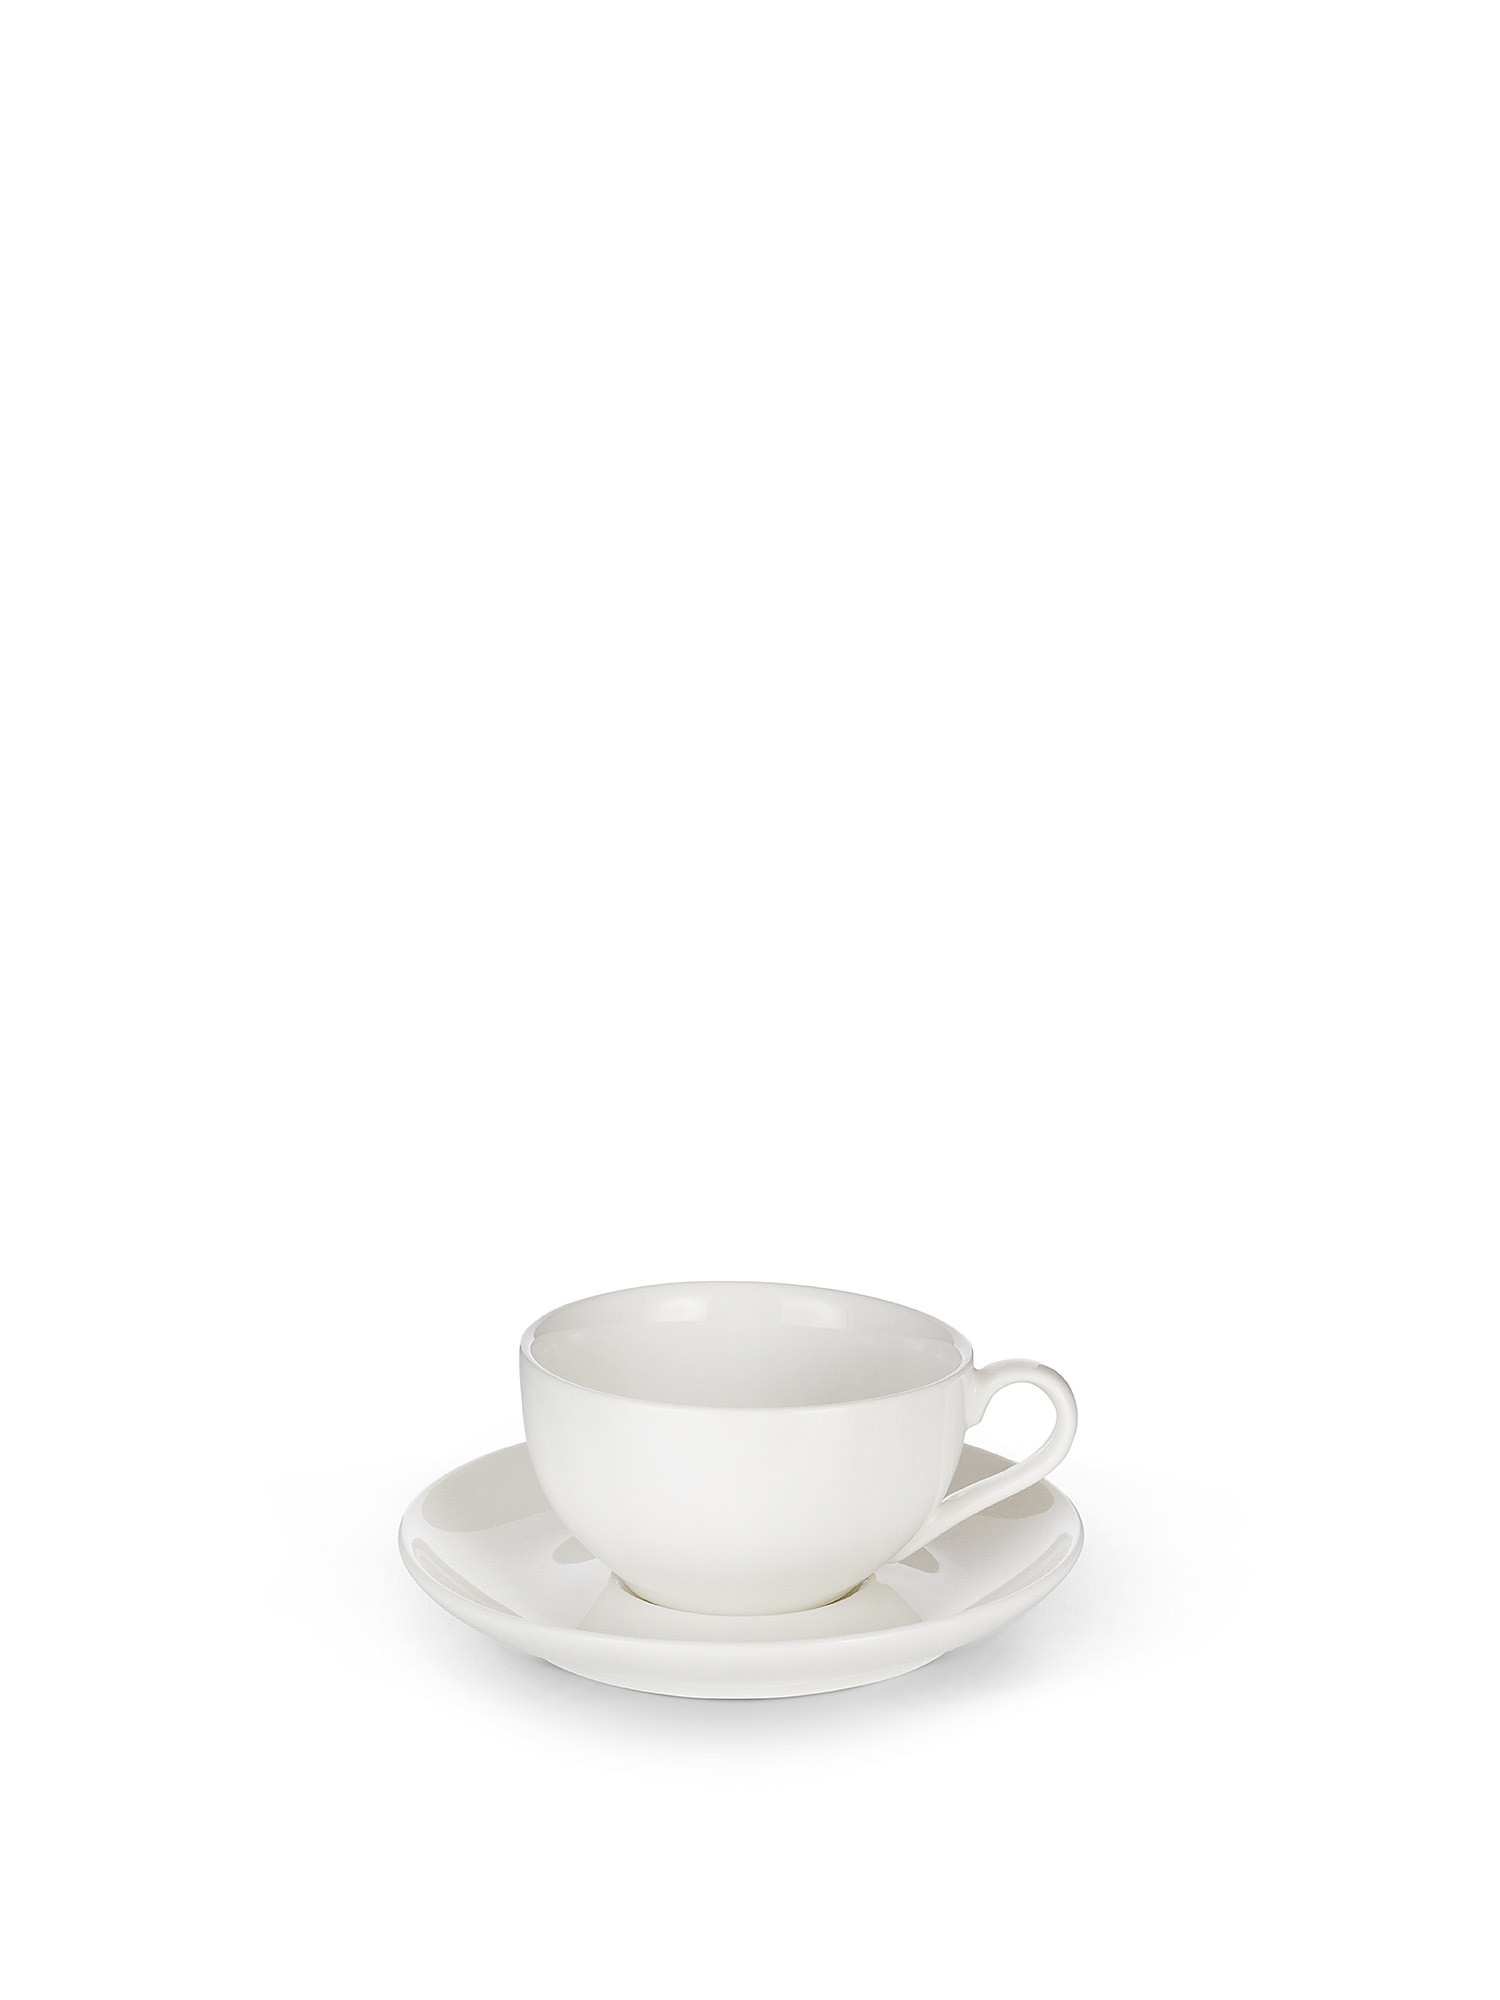 Tazza da caffè porcellana bianca, Bianco, large image number 0